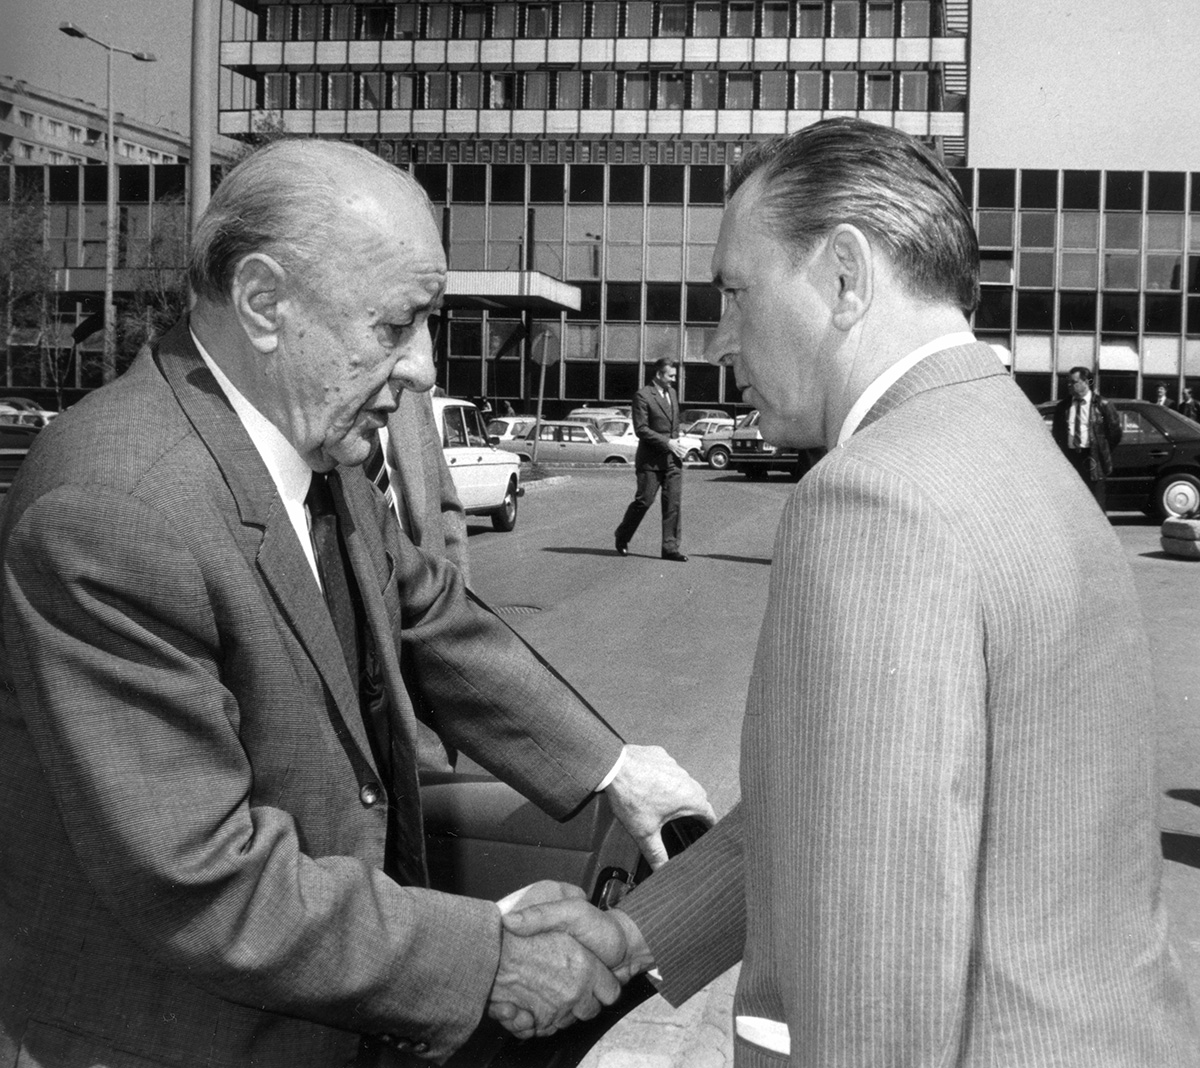 János Kádár a Károly Grósz, ktorý ho v roku 1989 nahradí na poste Generálneho tajomníka. 1986. Zbierka miestnych dejín Angyalföldu